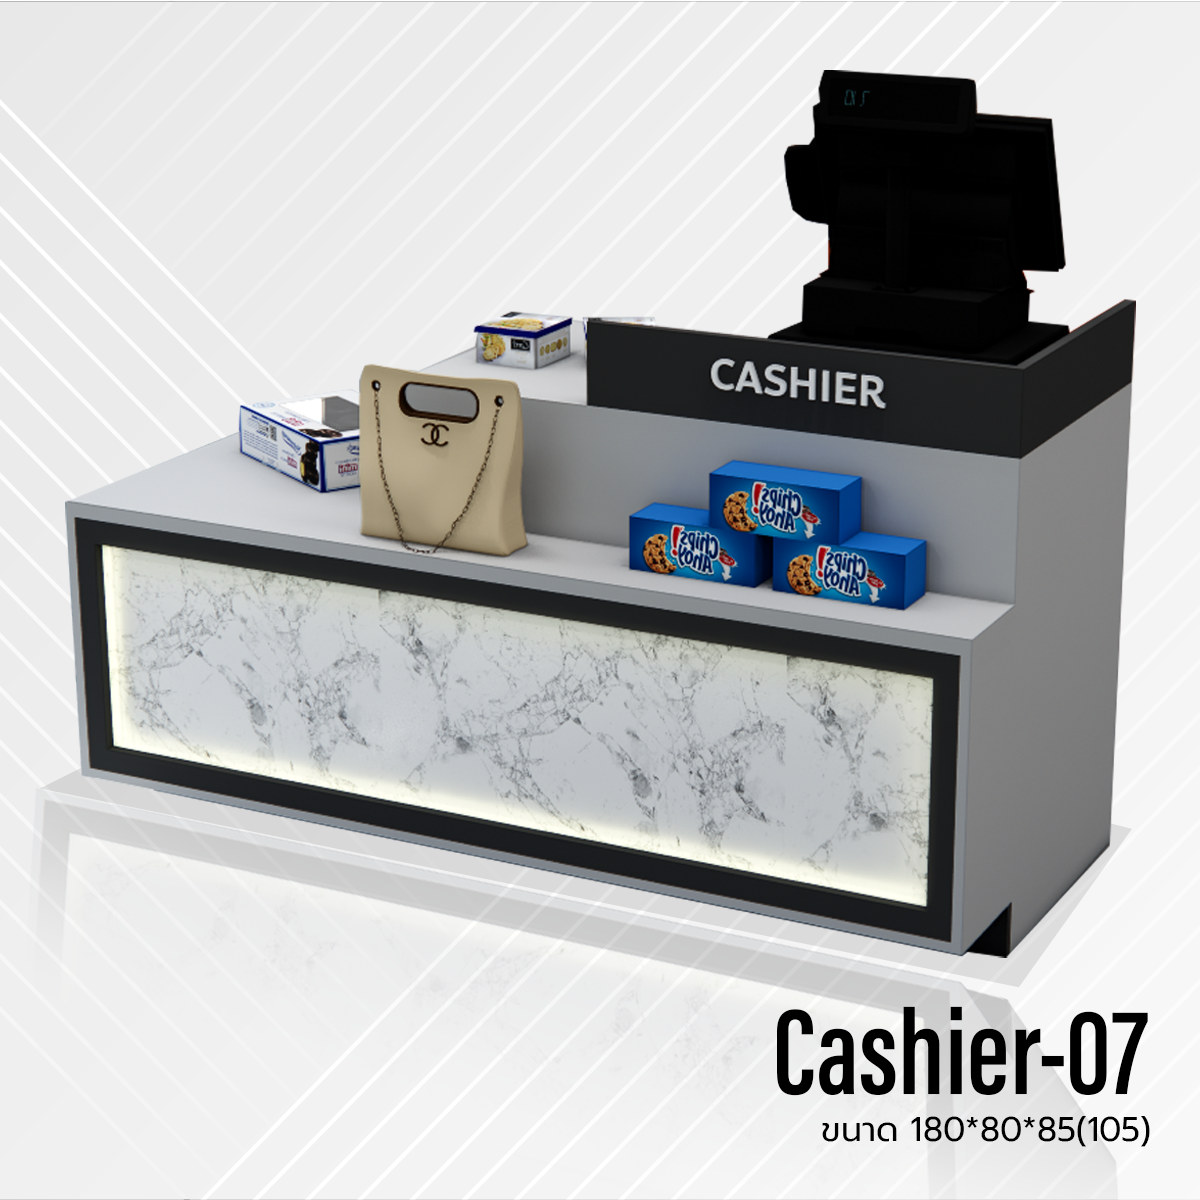 Cashier-07 แคชเชียร์คิดเงิน